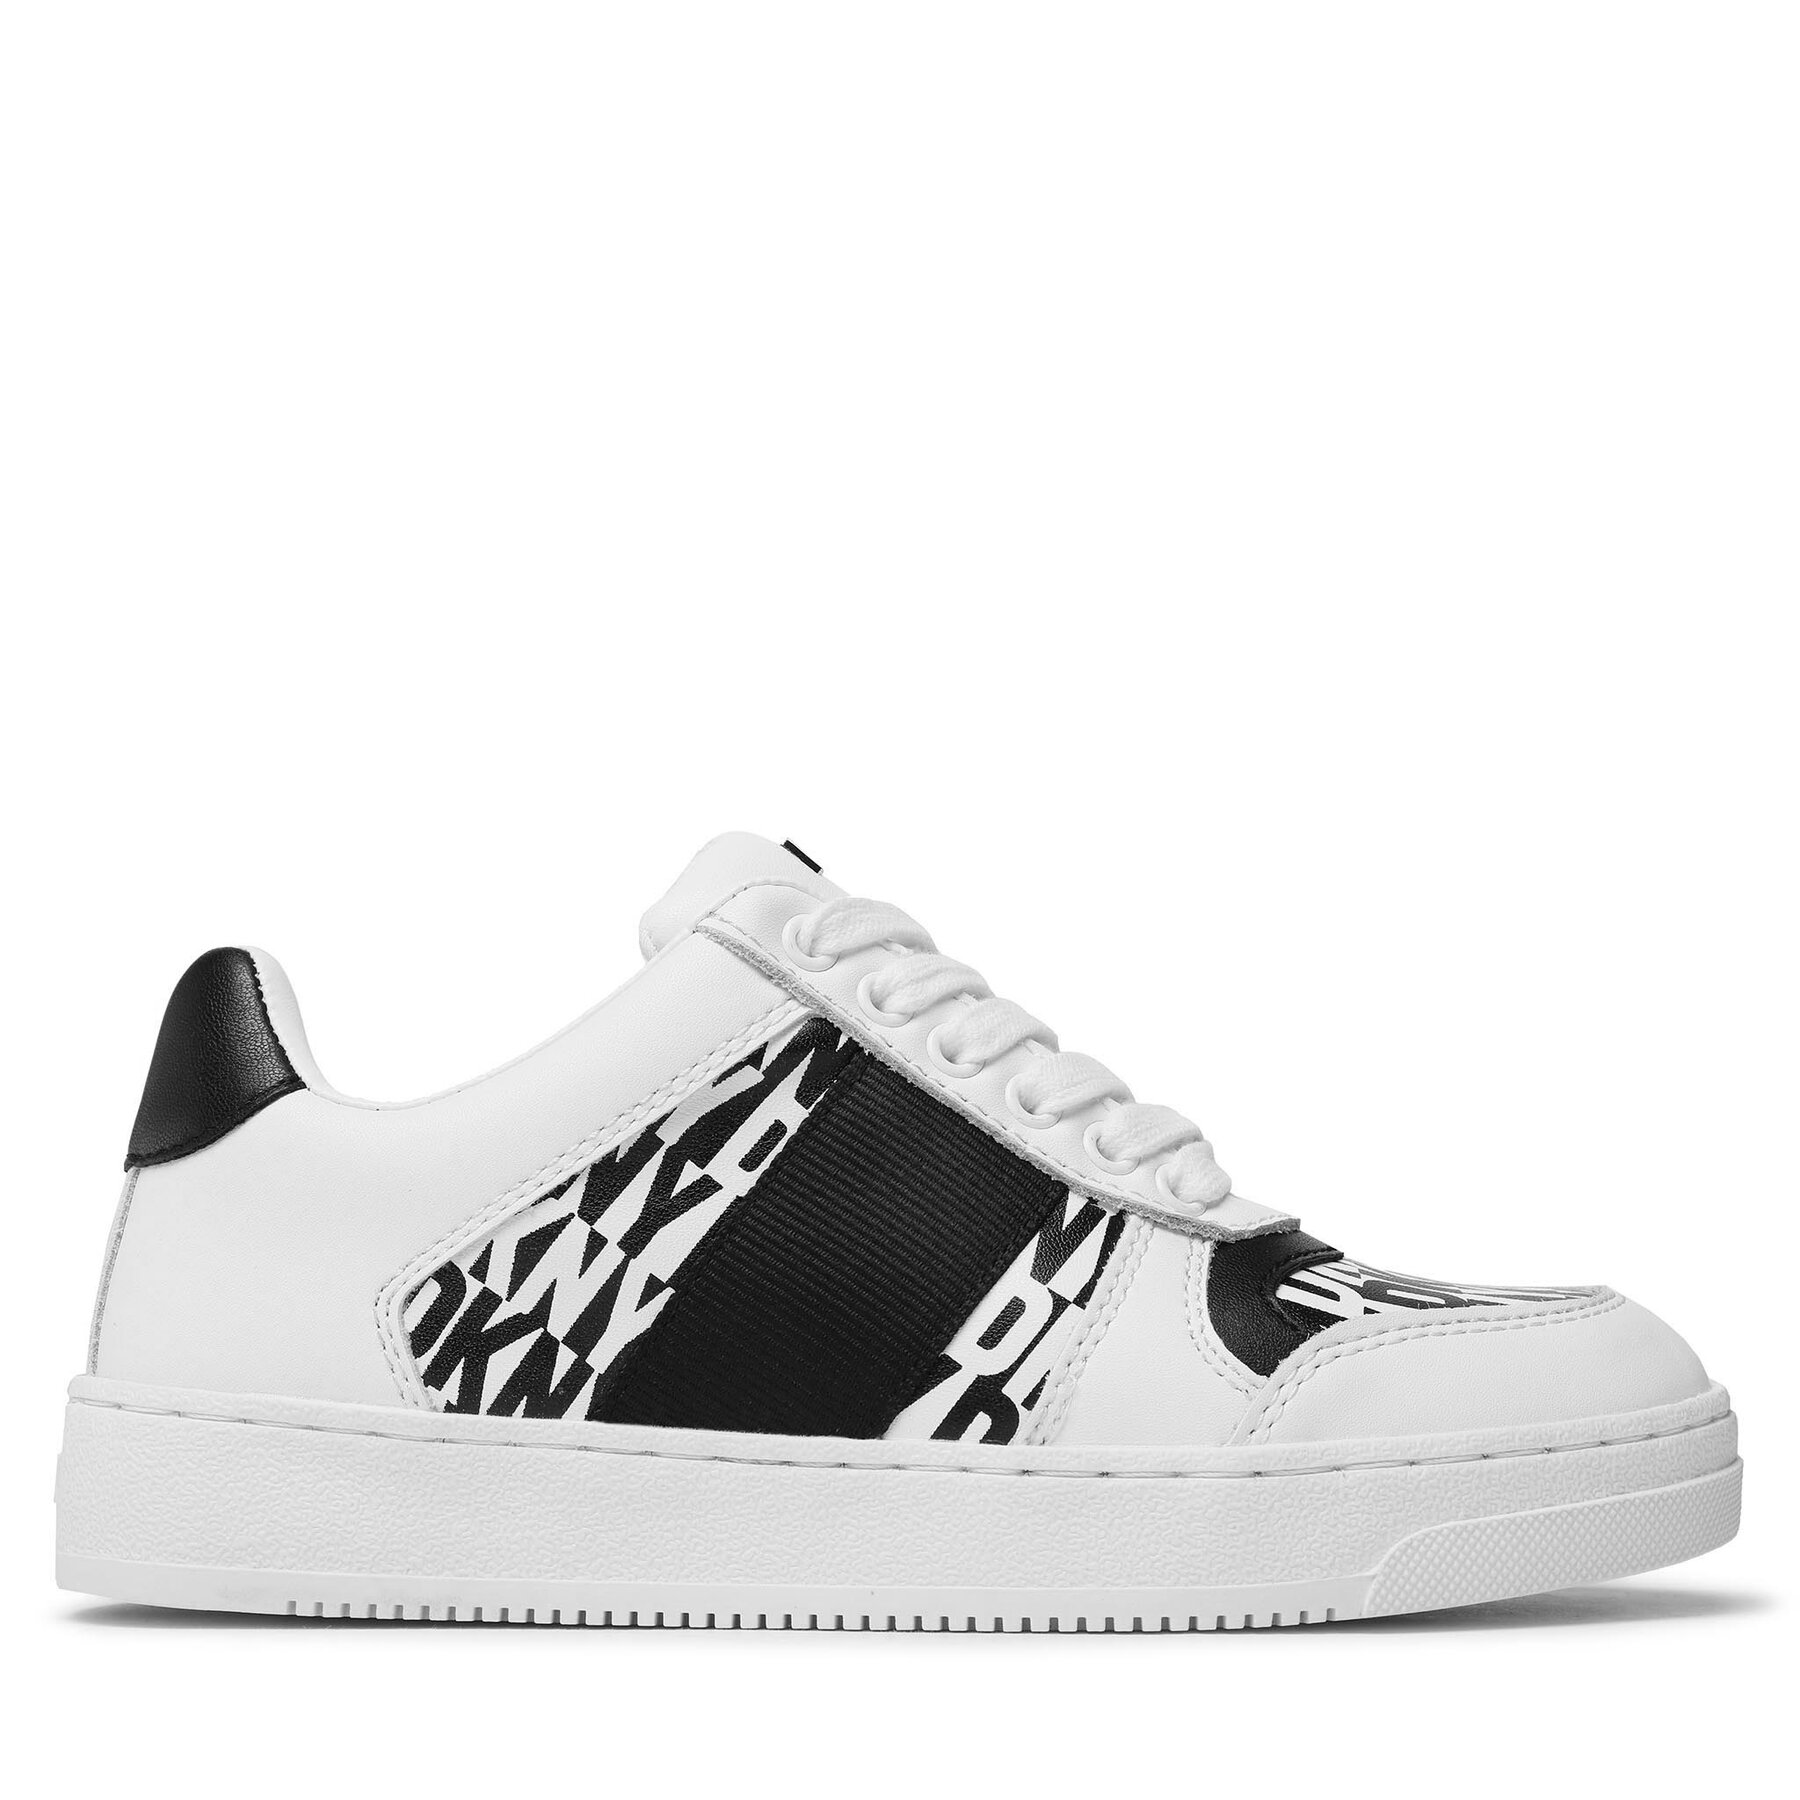 Sneakers DKNY Odlin K4271369 Black/White 005 von DKNY